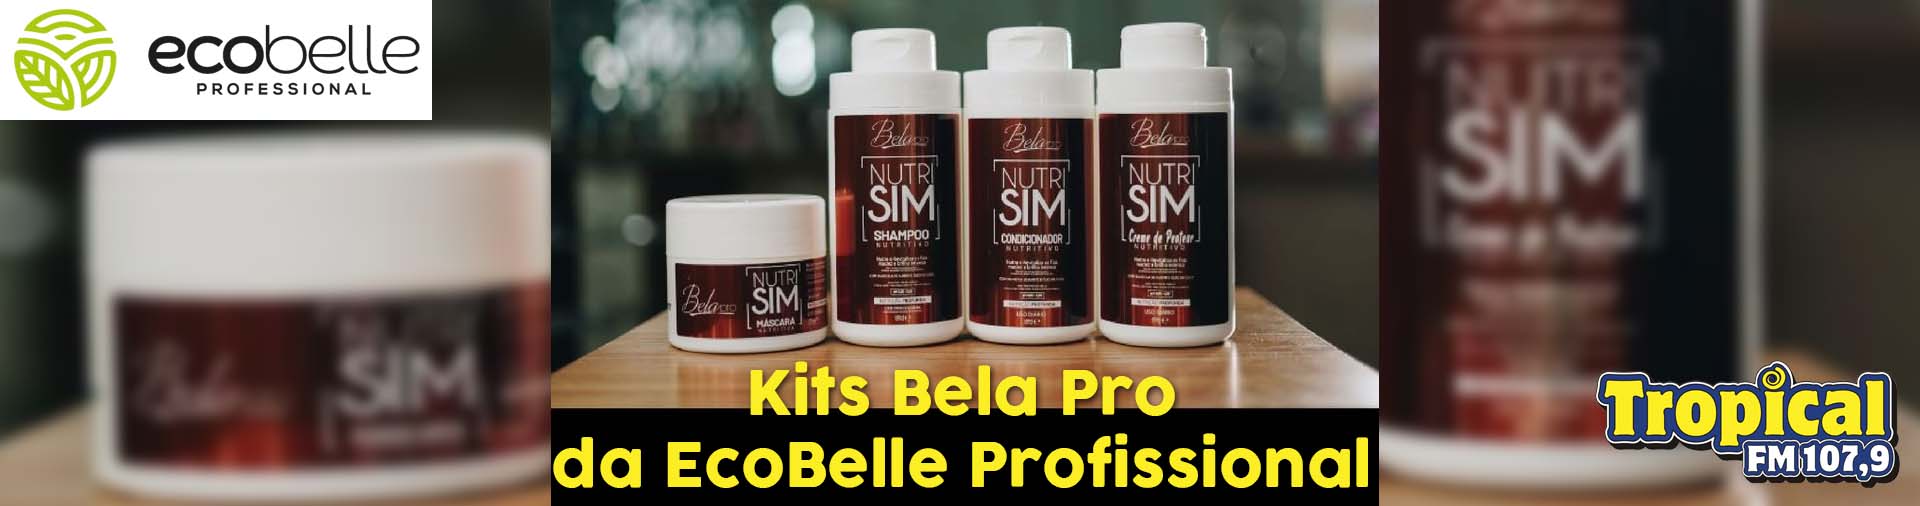 Banner Kit Bela Pro da EcoBelle Profissional